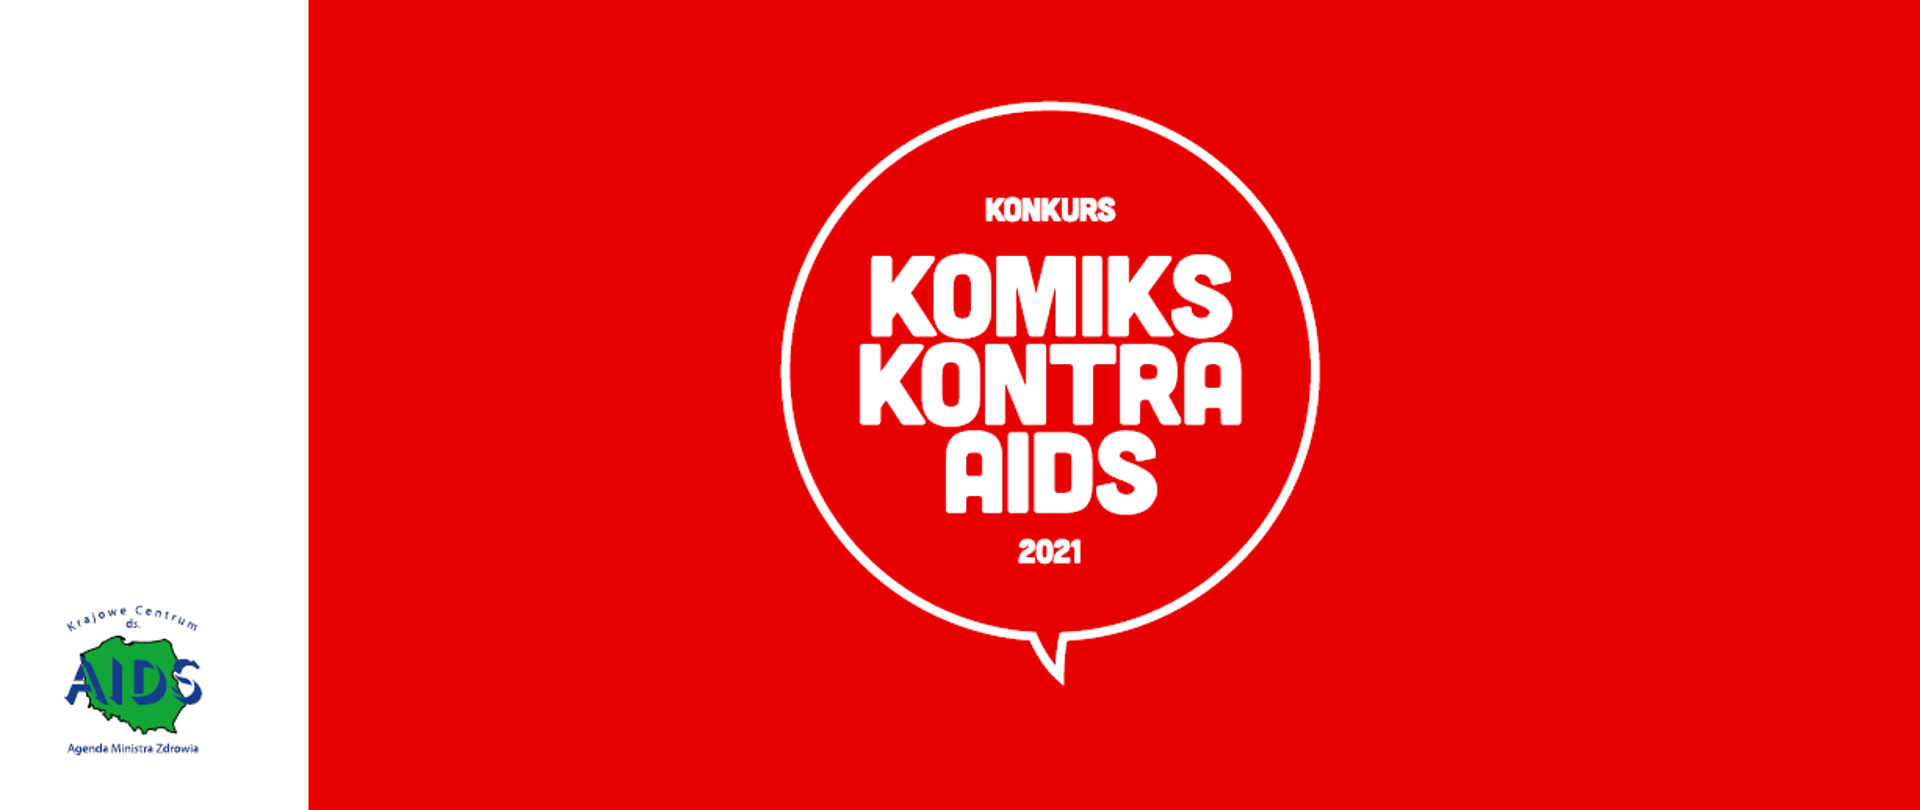 Biały napis: konkurs Komiks kontra aids 2021 na czerwonym tle